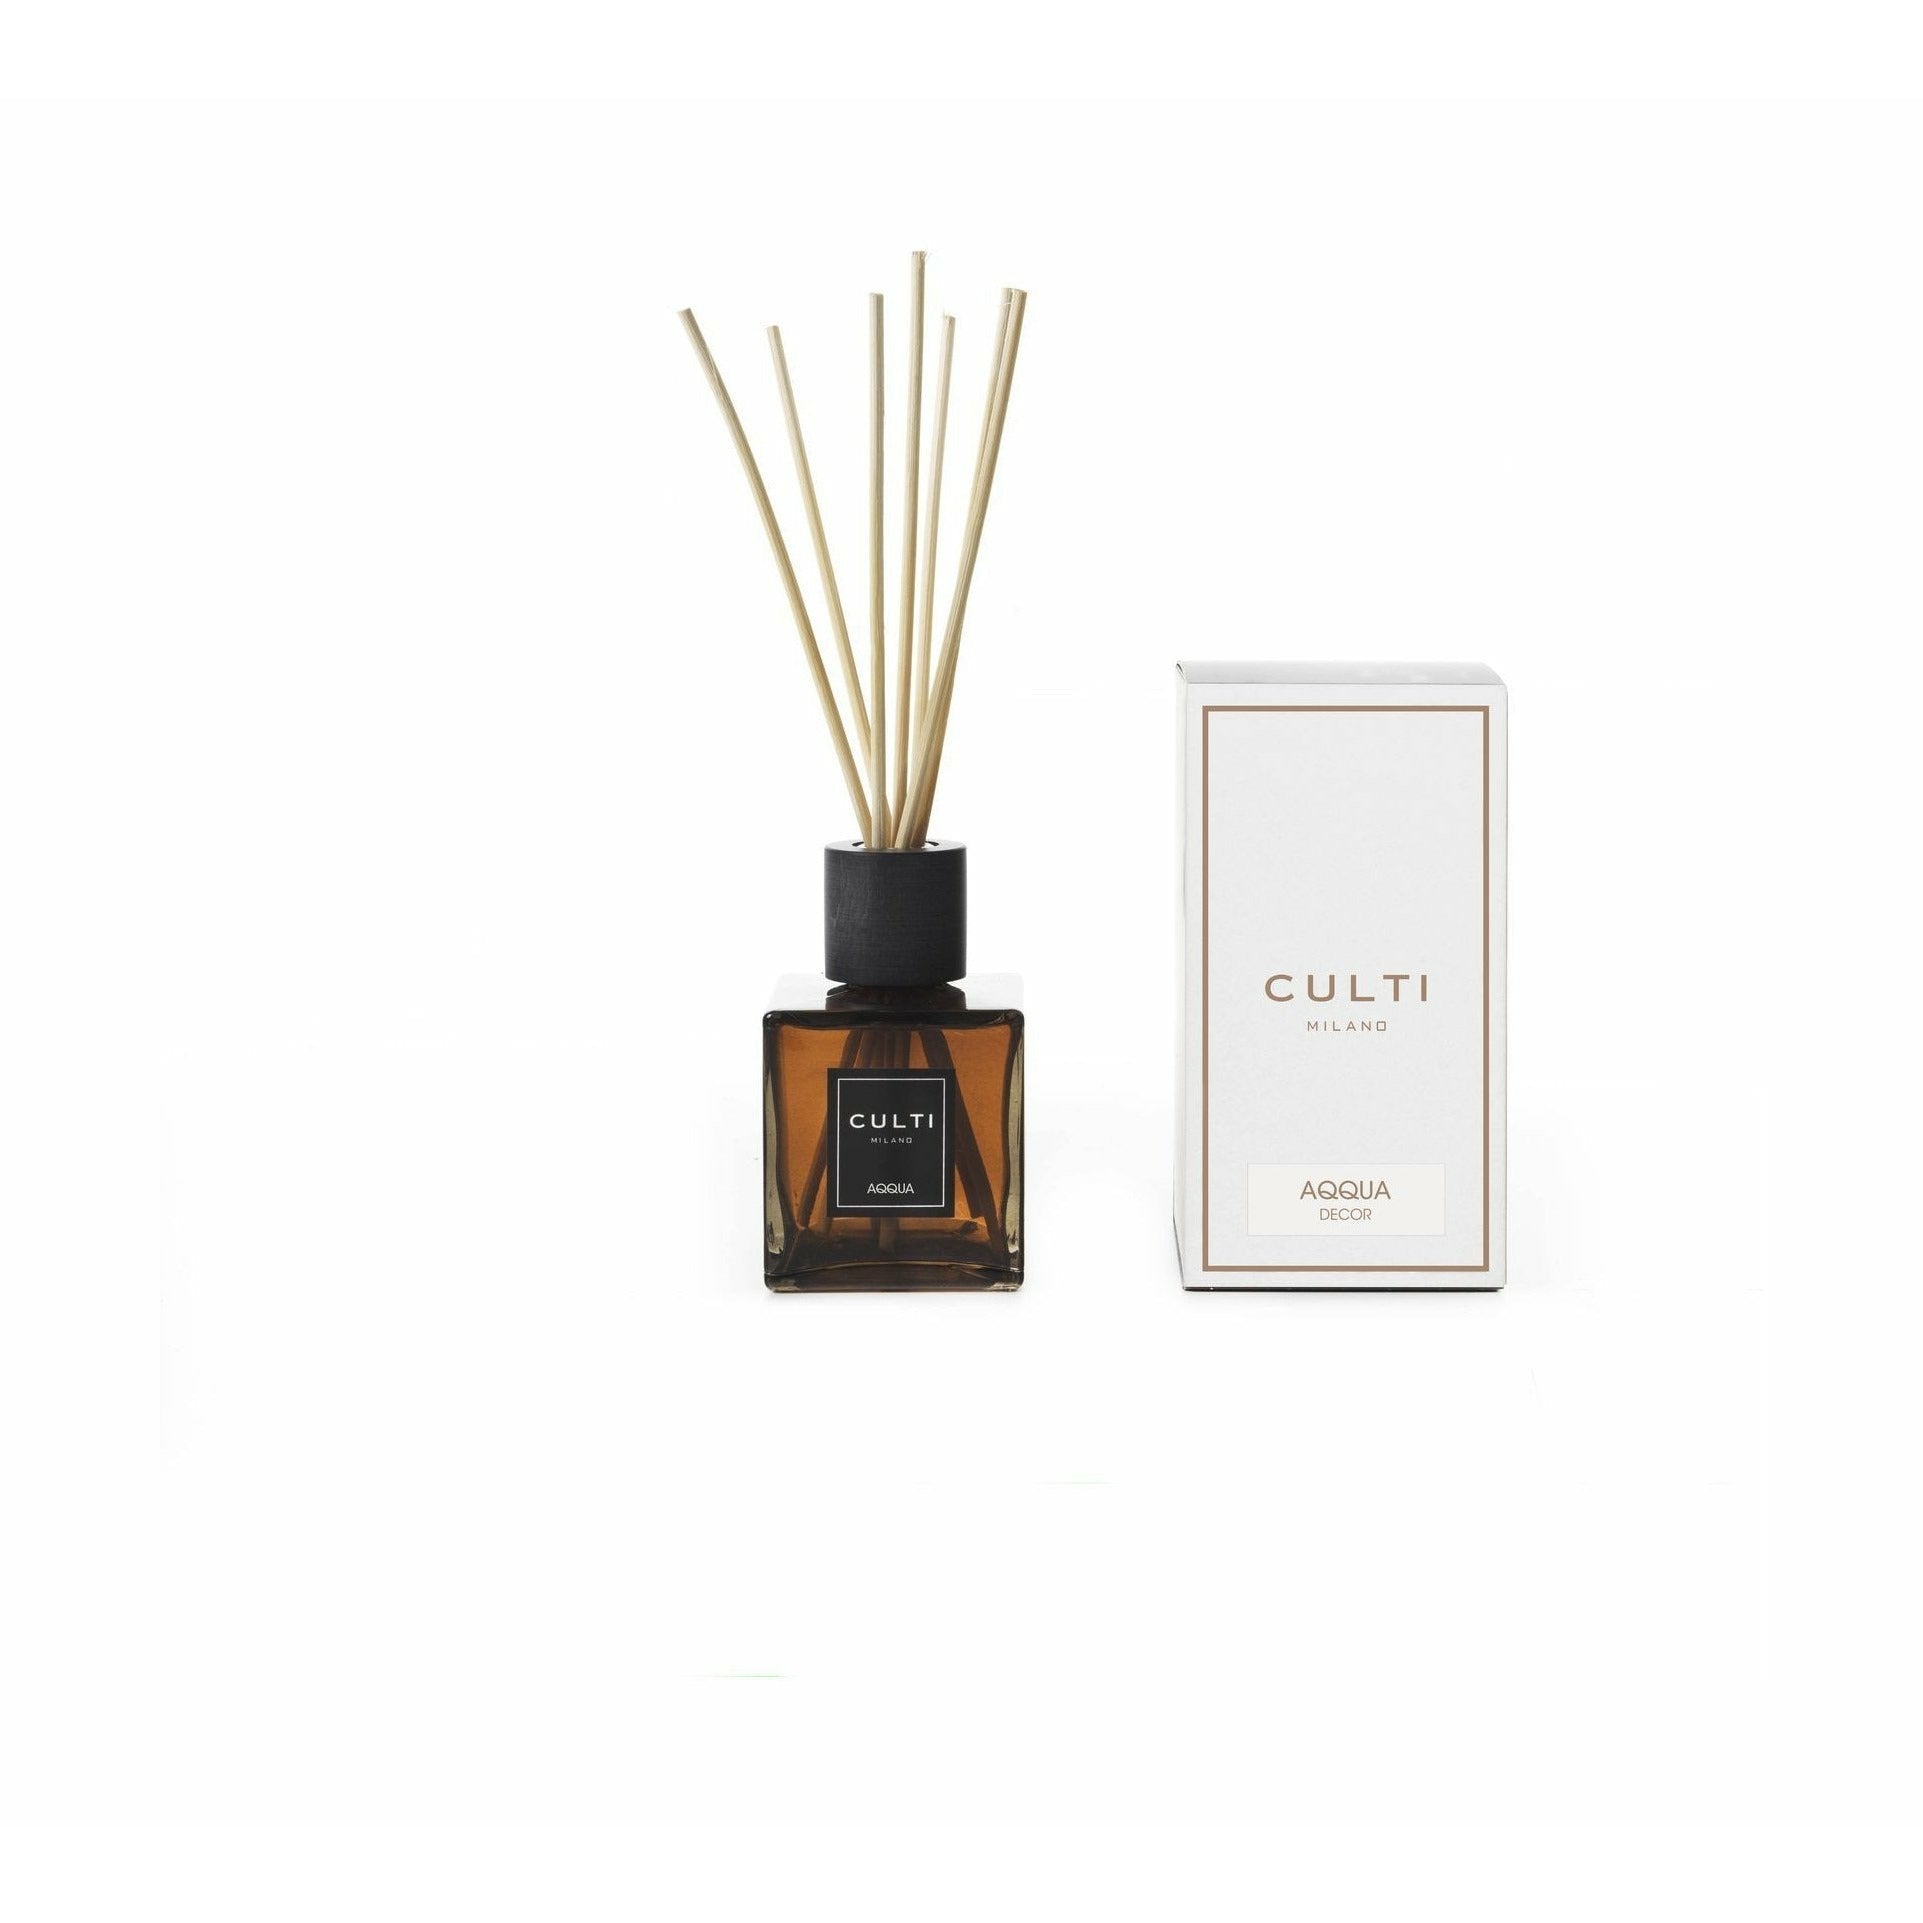 Culti Milano Decor Classic Fragrance Difuzor Aqqua, 250 ml